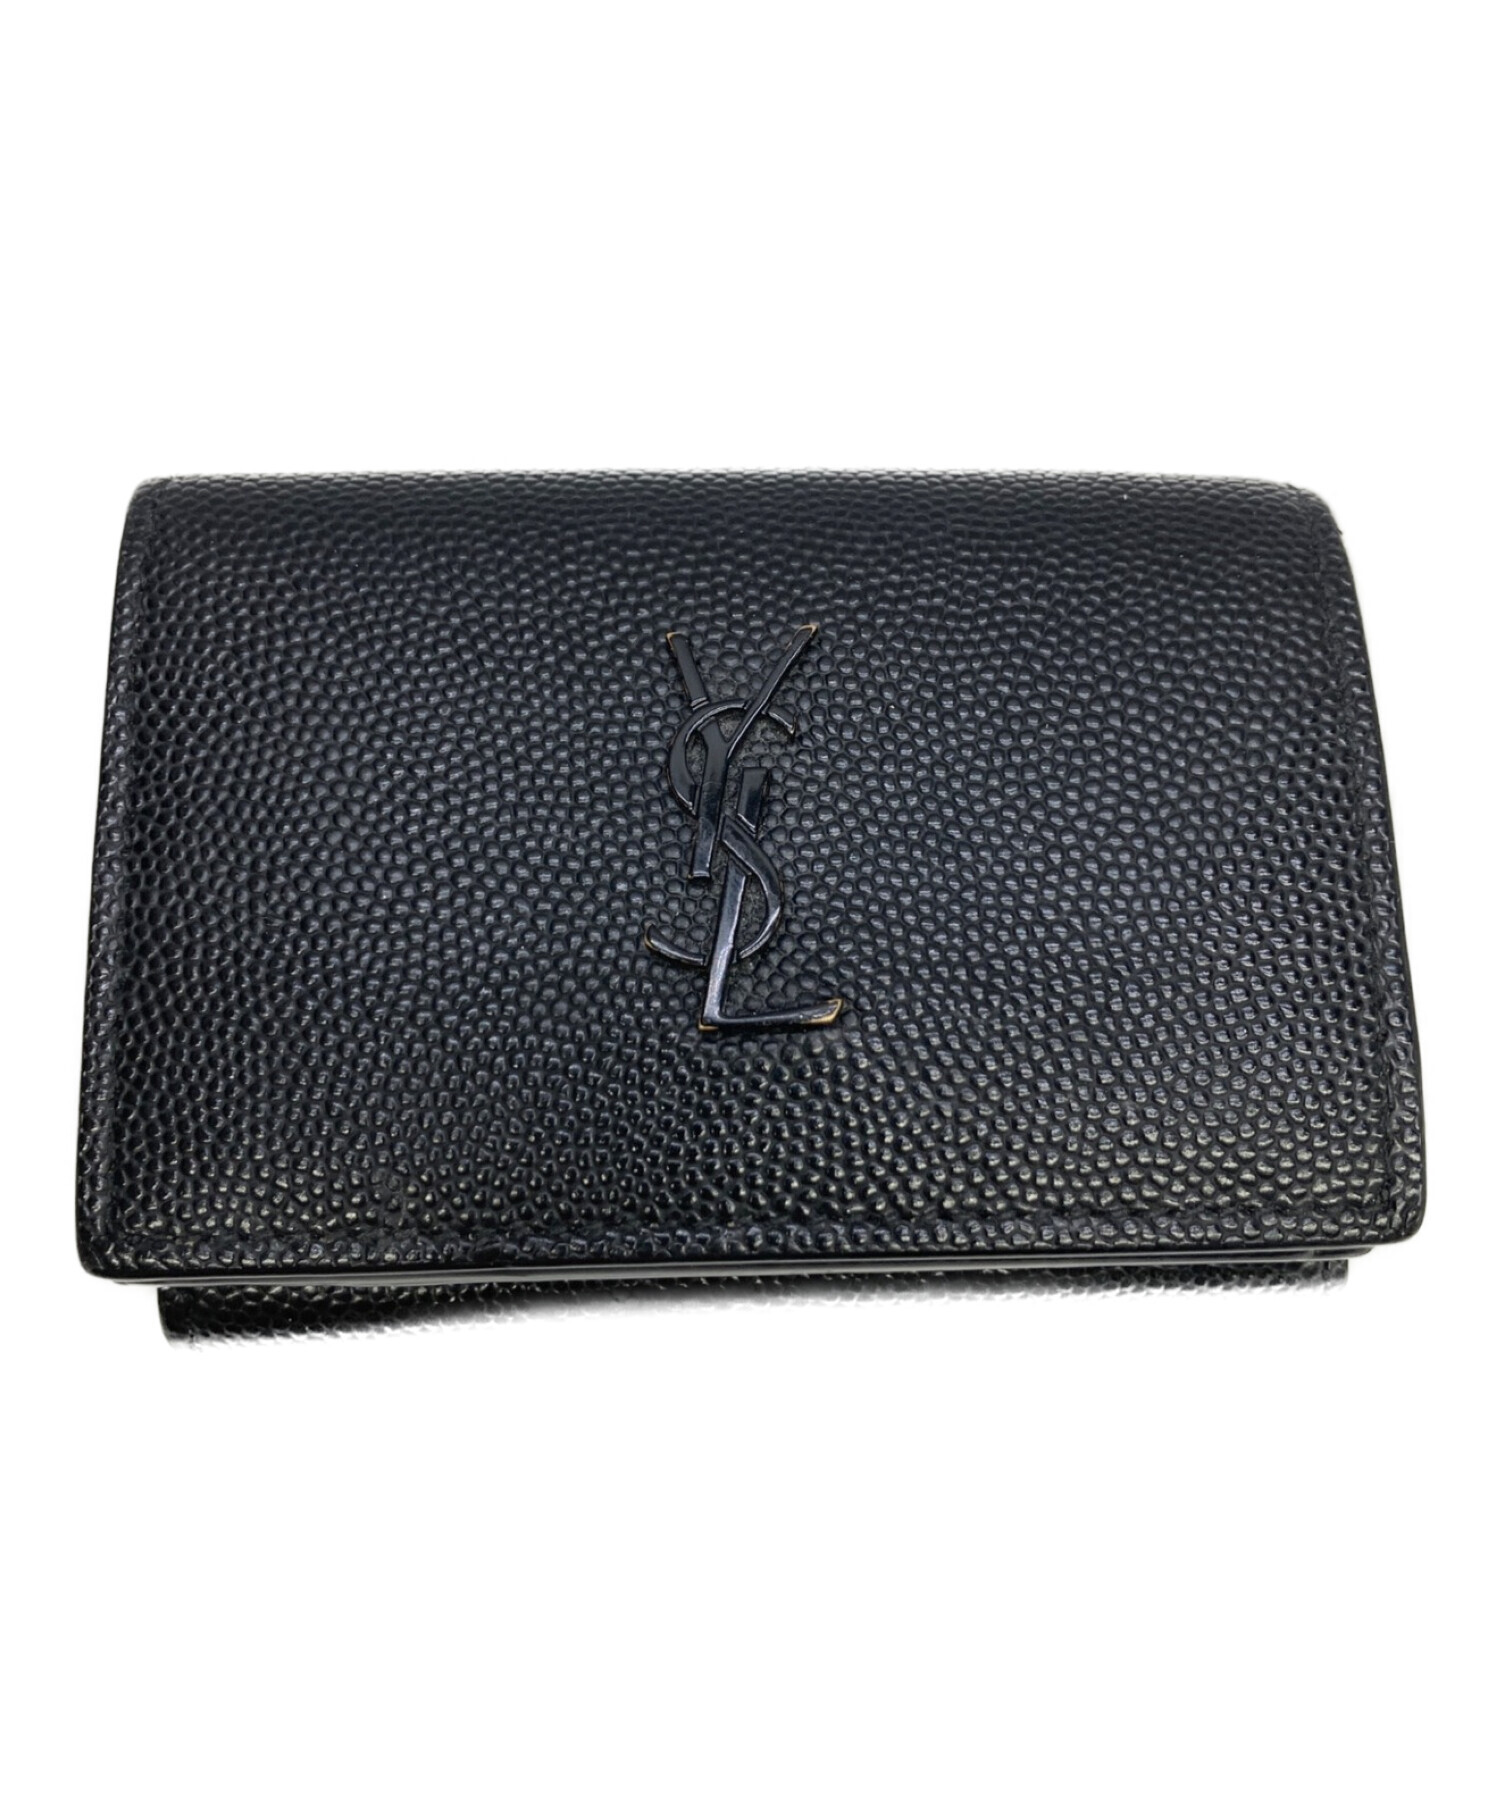 SAINT LAURENT イヴサンローラン 三つ折り財布 財布約9cm×12cm×2cm